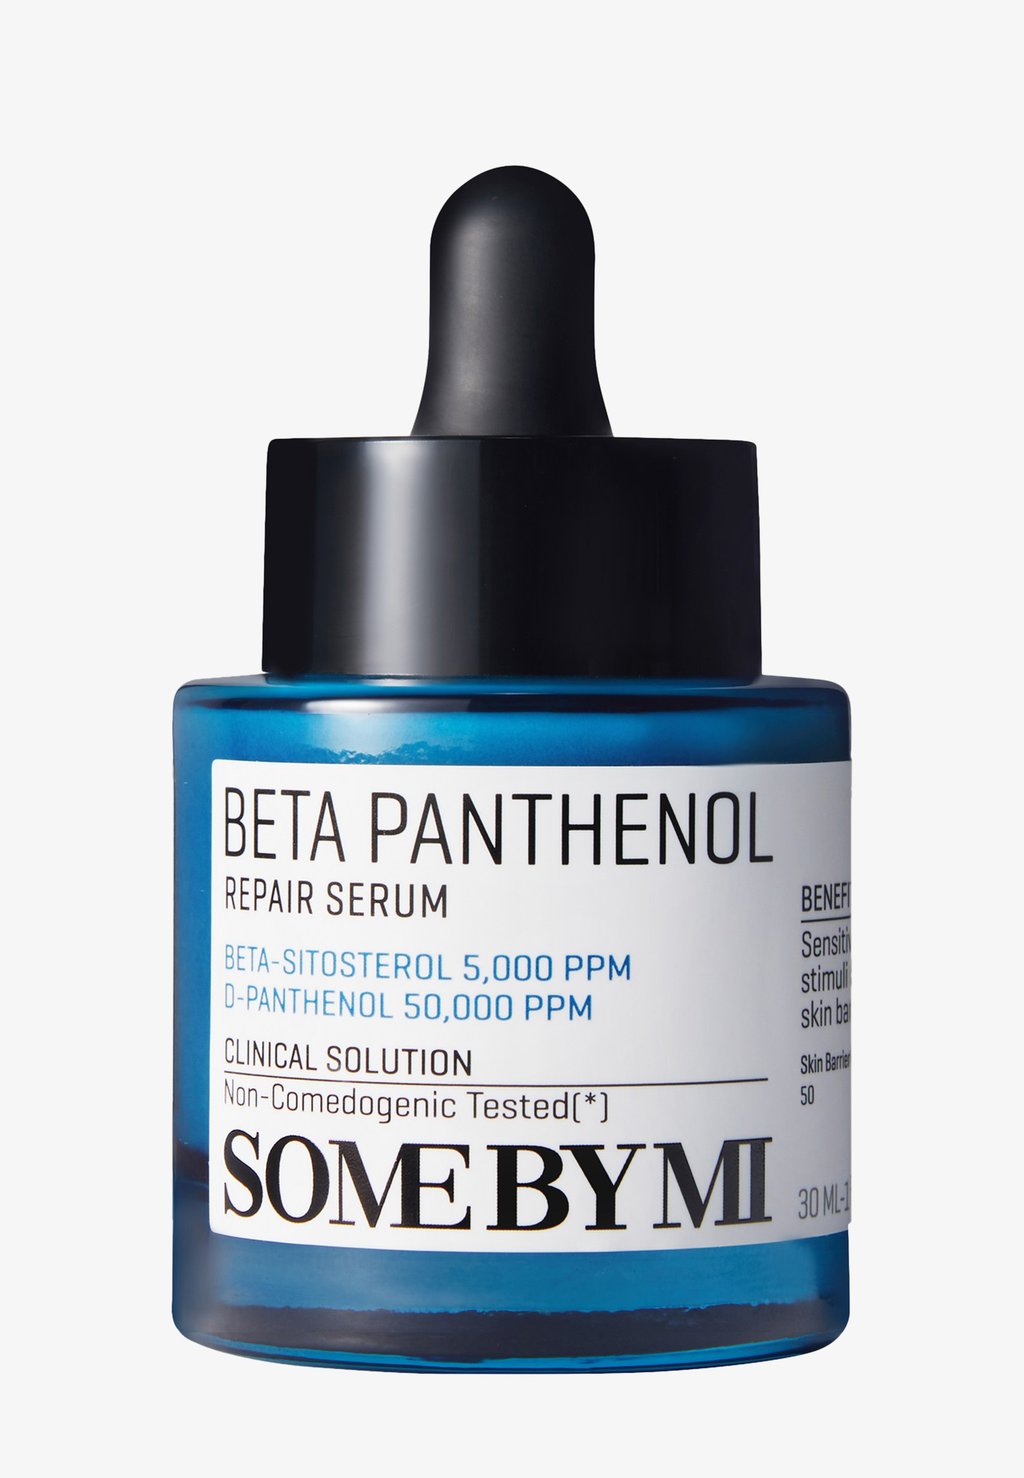 some by mi beta panthenol repair serum 30ml Сыворотка Beta Panthenol Repair Serum SOME BY MI